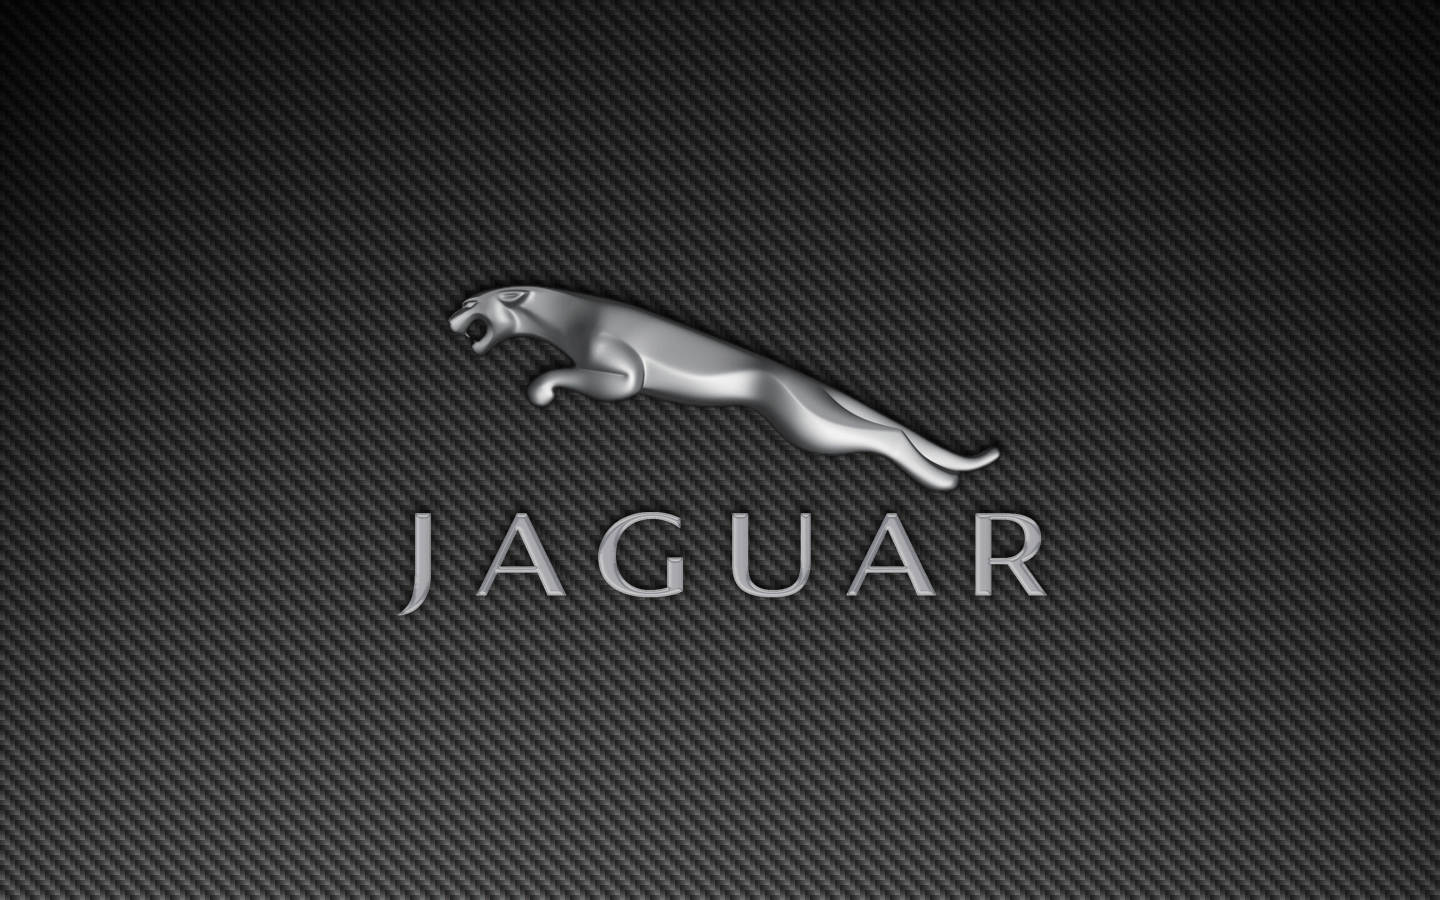 Jaguar Logo HD Widescreen Wallpaper. Jaguar car logo, Car